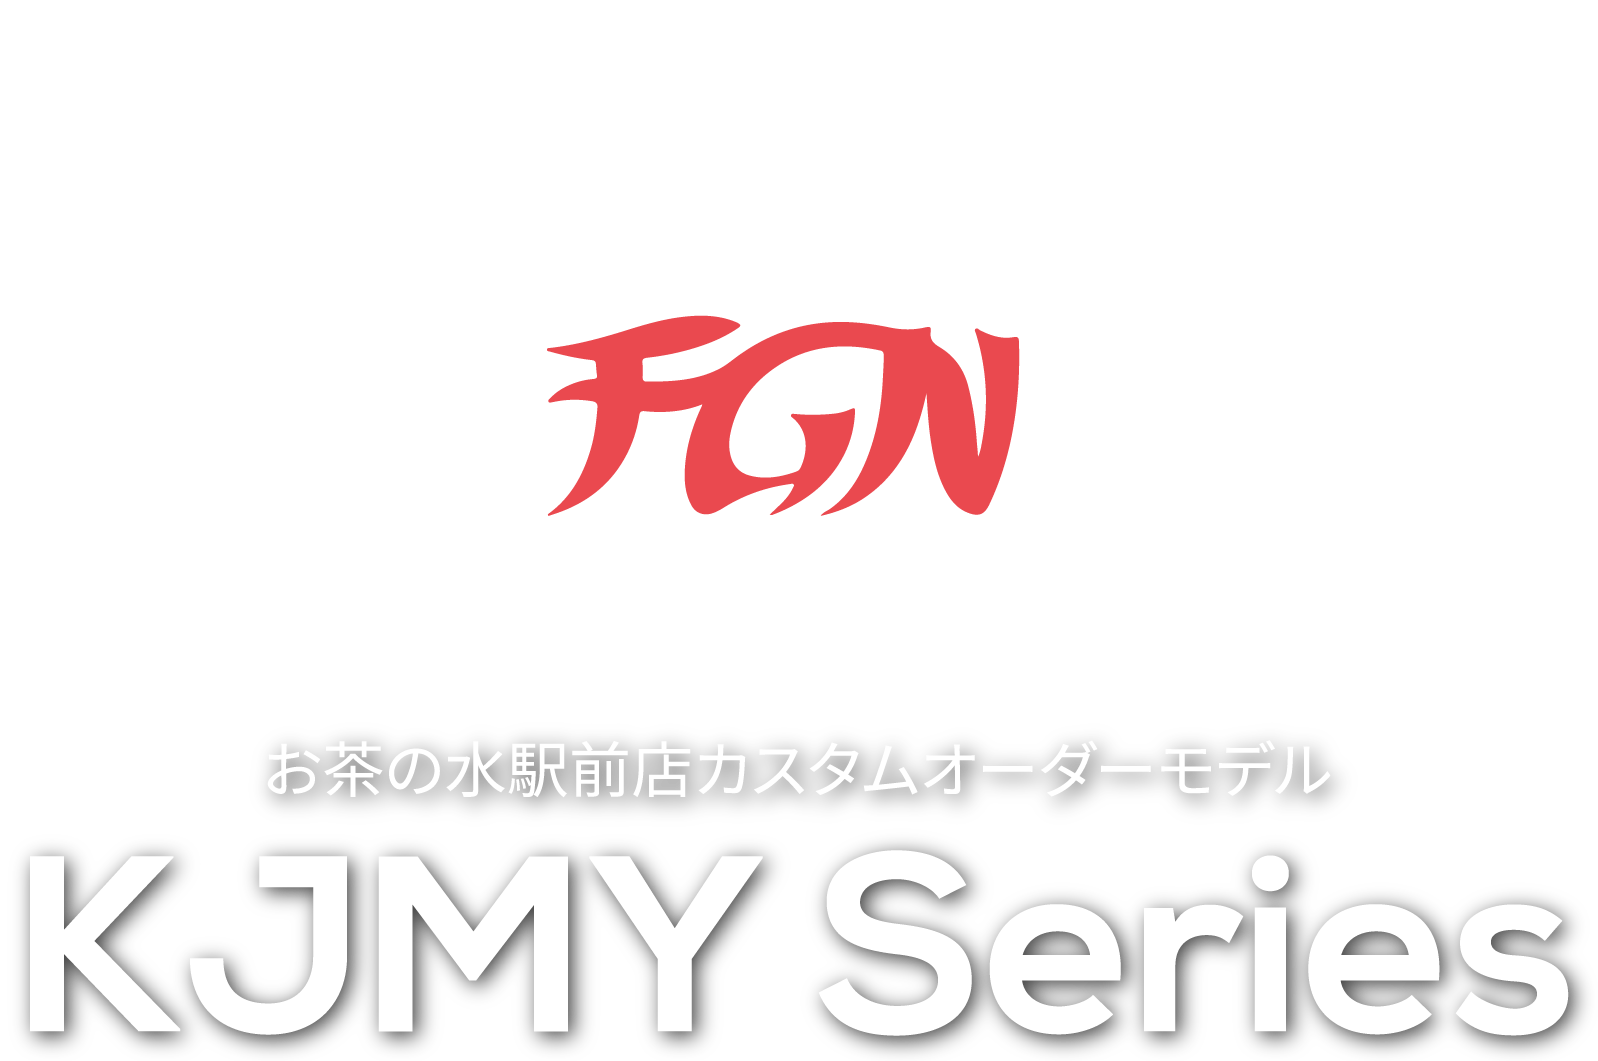 FGN KJMY シリーズ - クロサワ楽器お茶の水駅前店カスタムオーダーモデル -